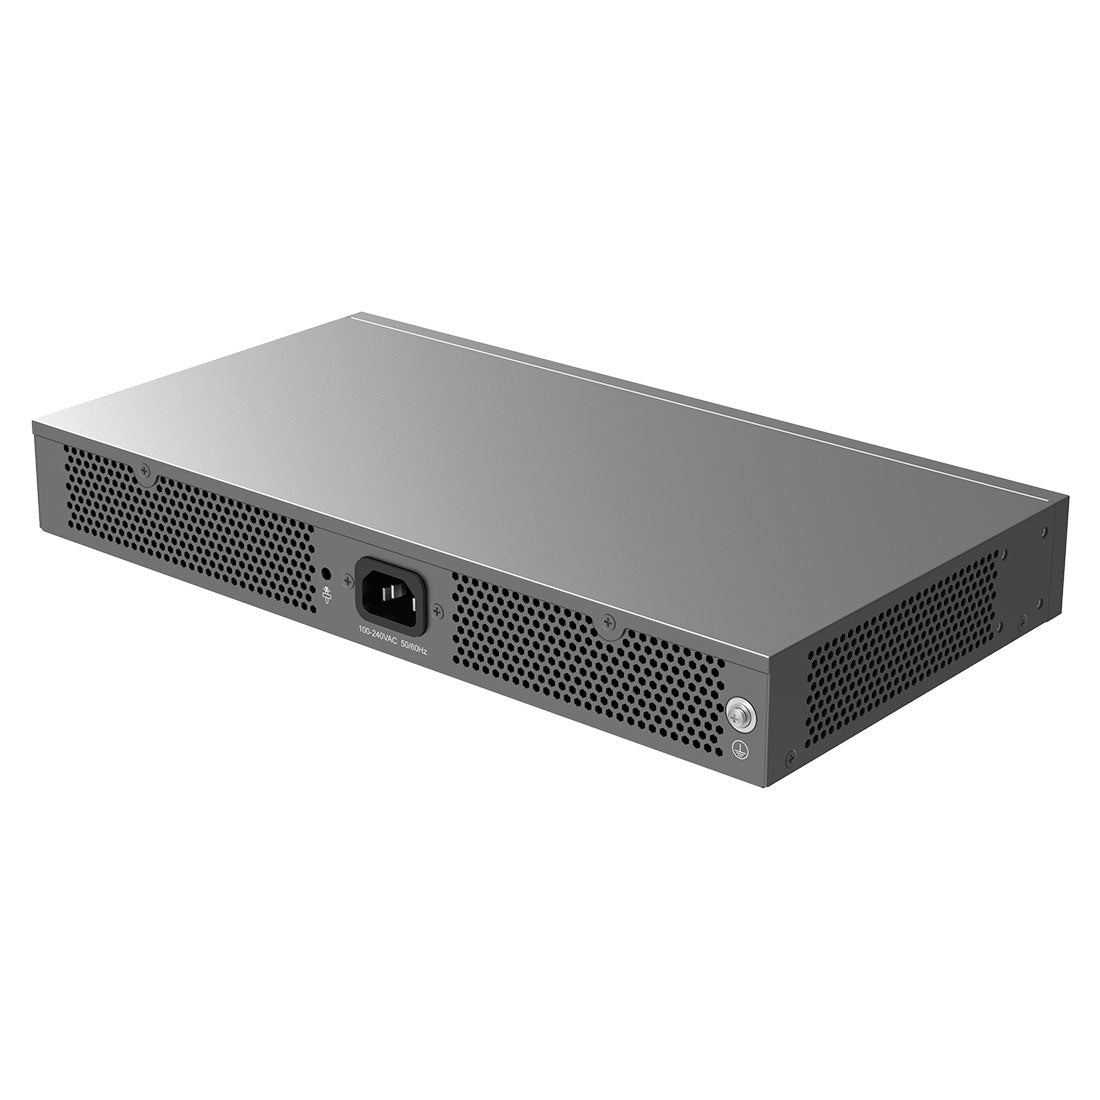 GWN7830 - Switch de Agregación para Empresas Administrable capa 3, 2 x GigaEth, 6 x Giga SFP, 4 x 10 Giga SFP+